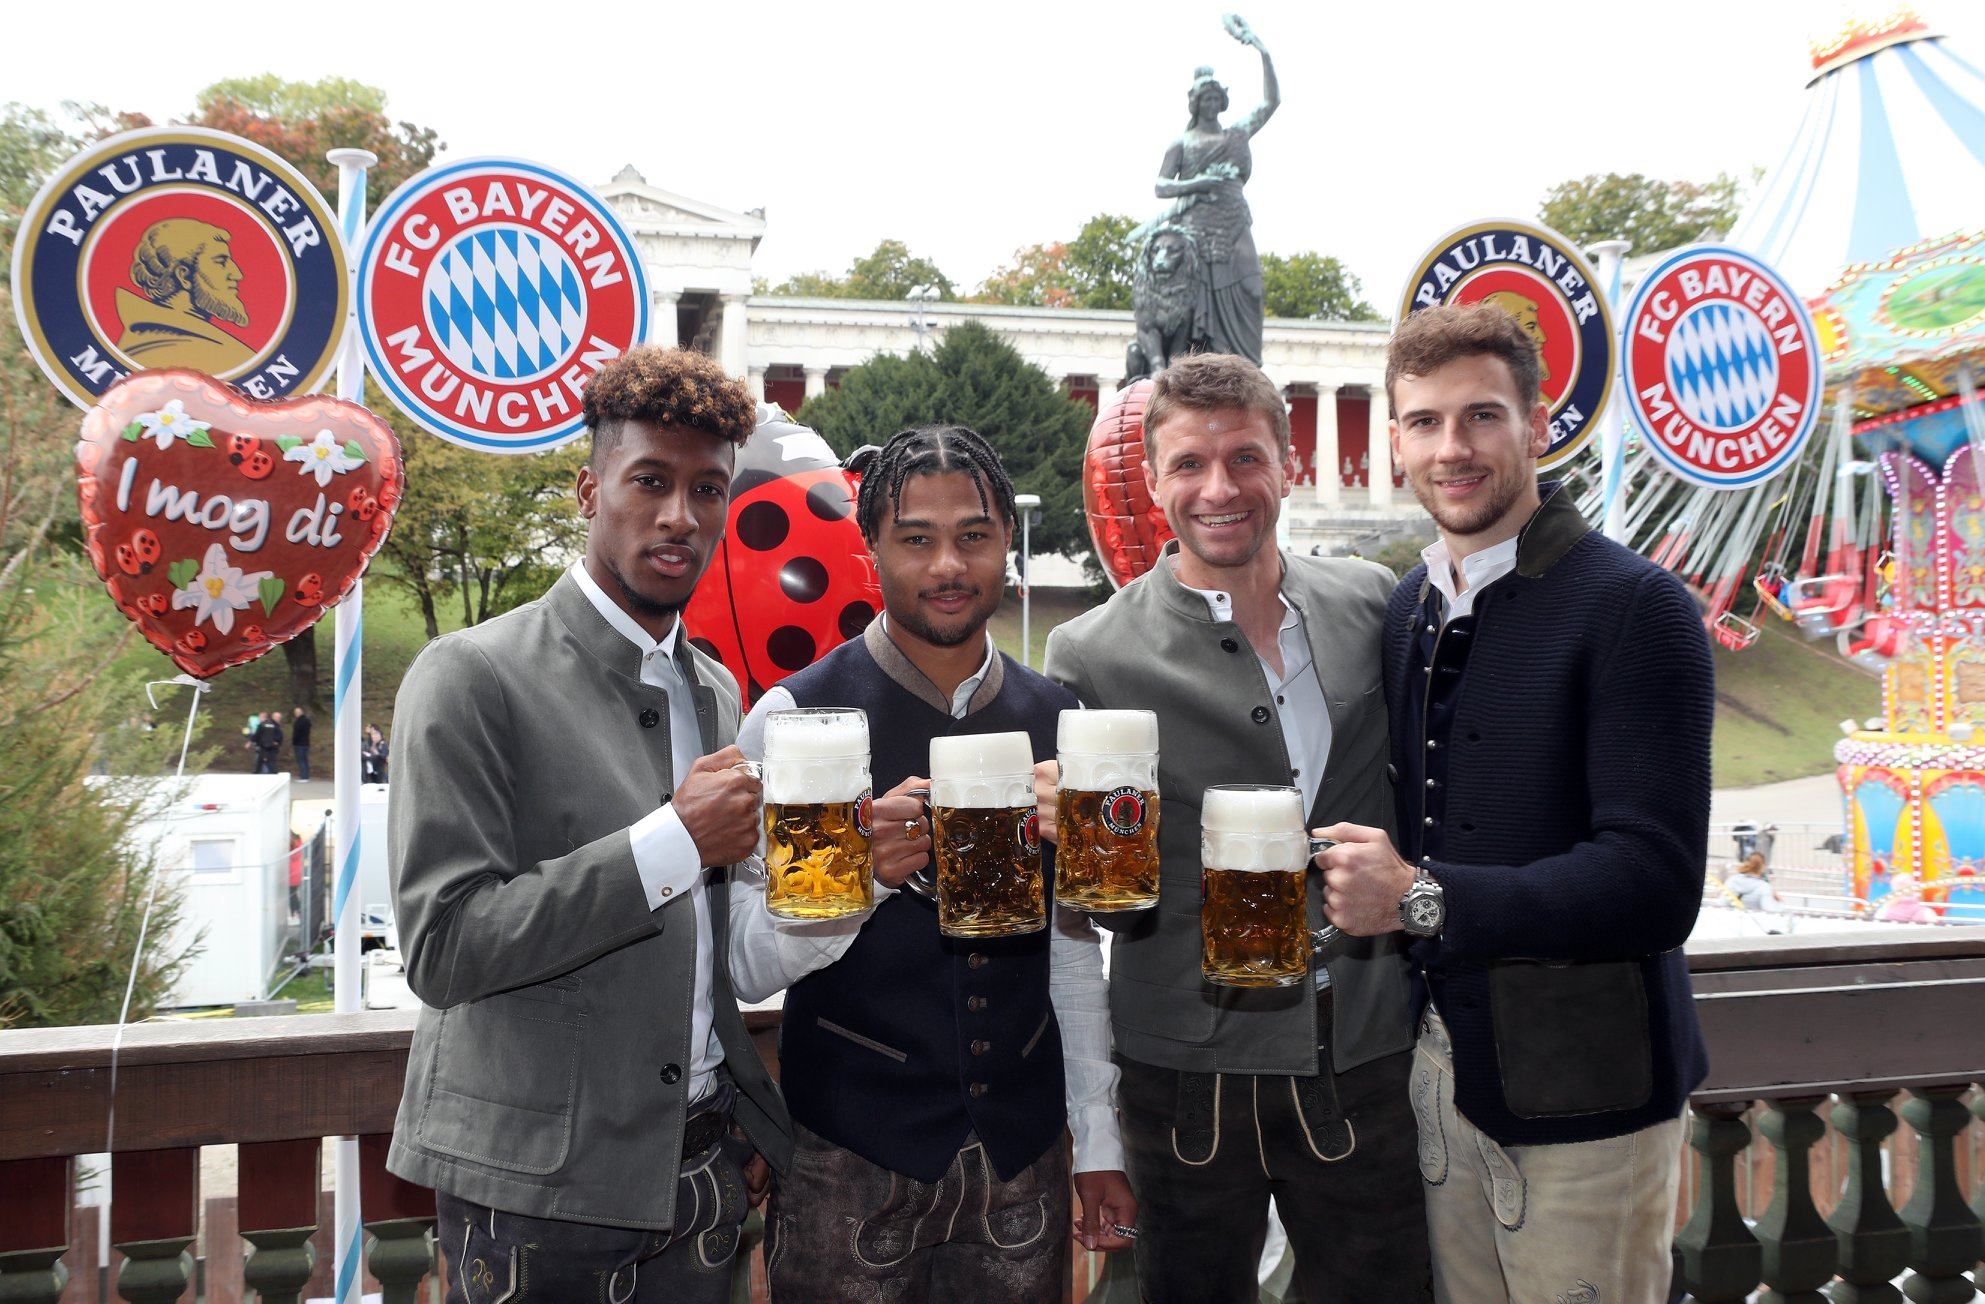 Най популярният германски клуб Байерн Мюнхен уважи традицията с посещение на